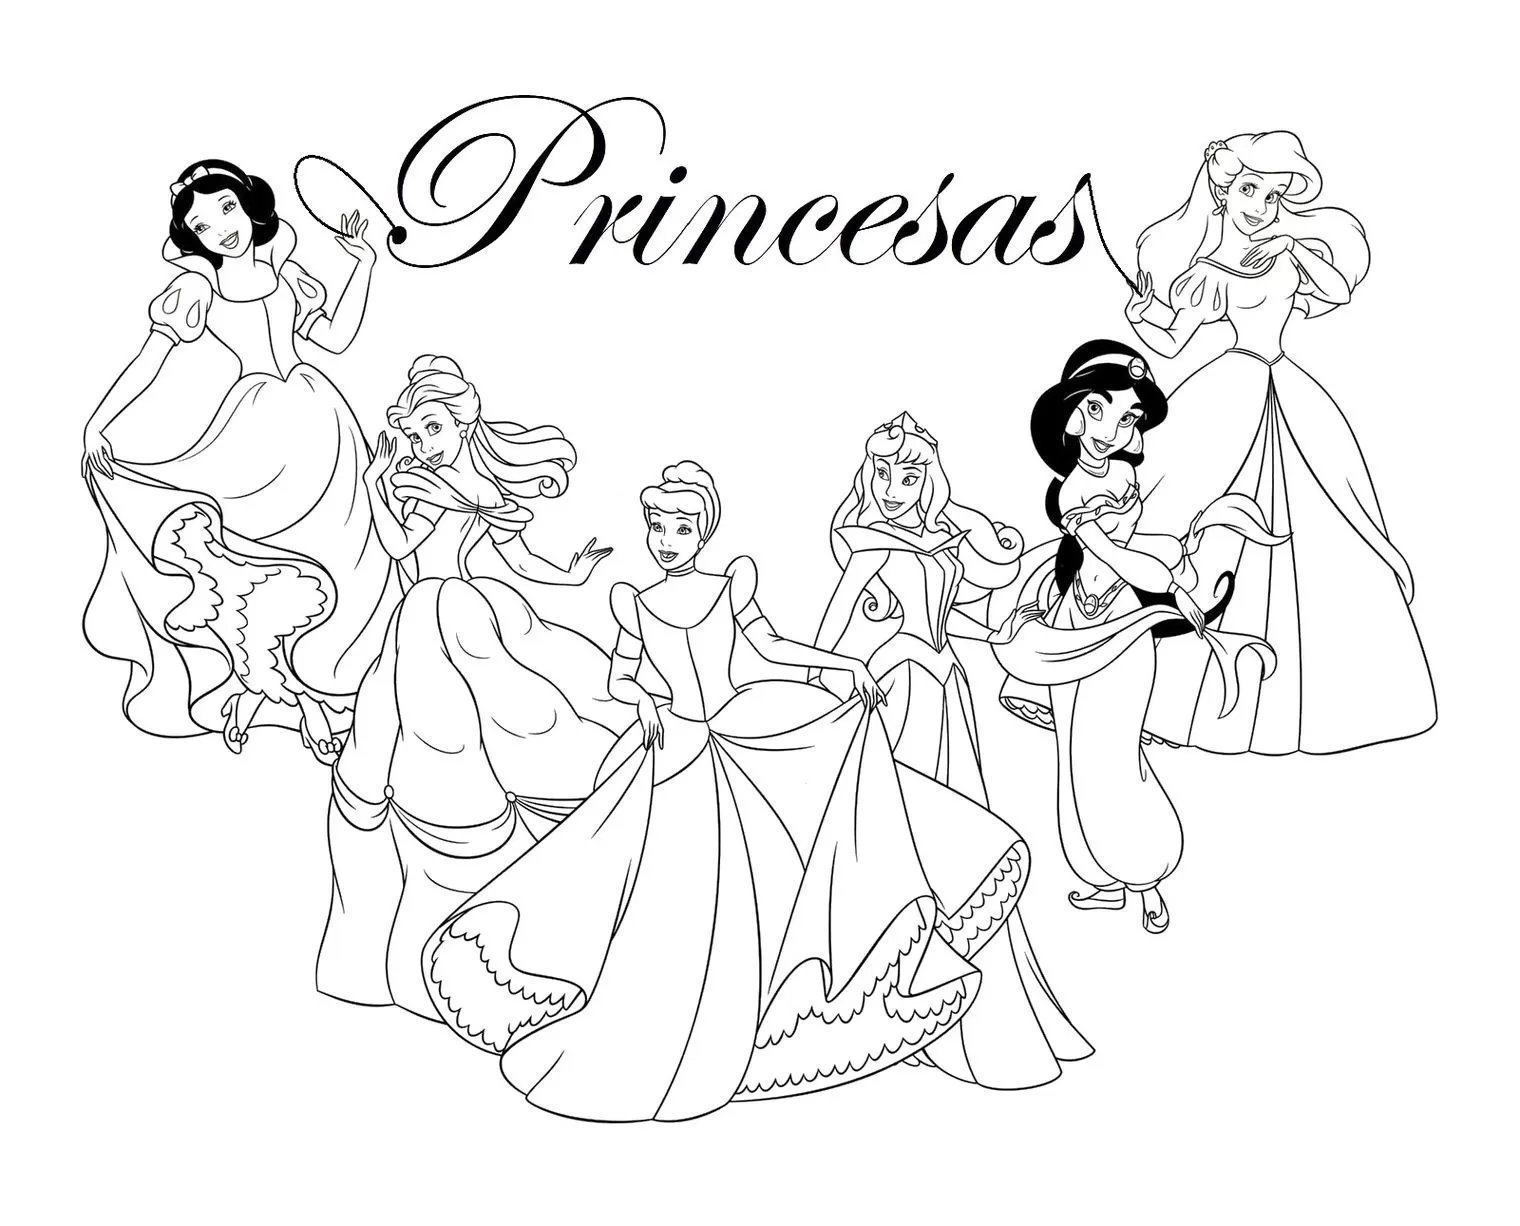 Desenhos para imprimir e colorir: Princesas para colorir